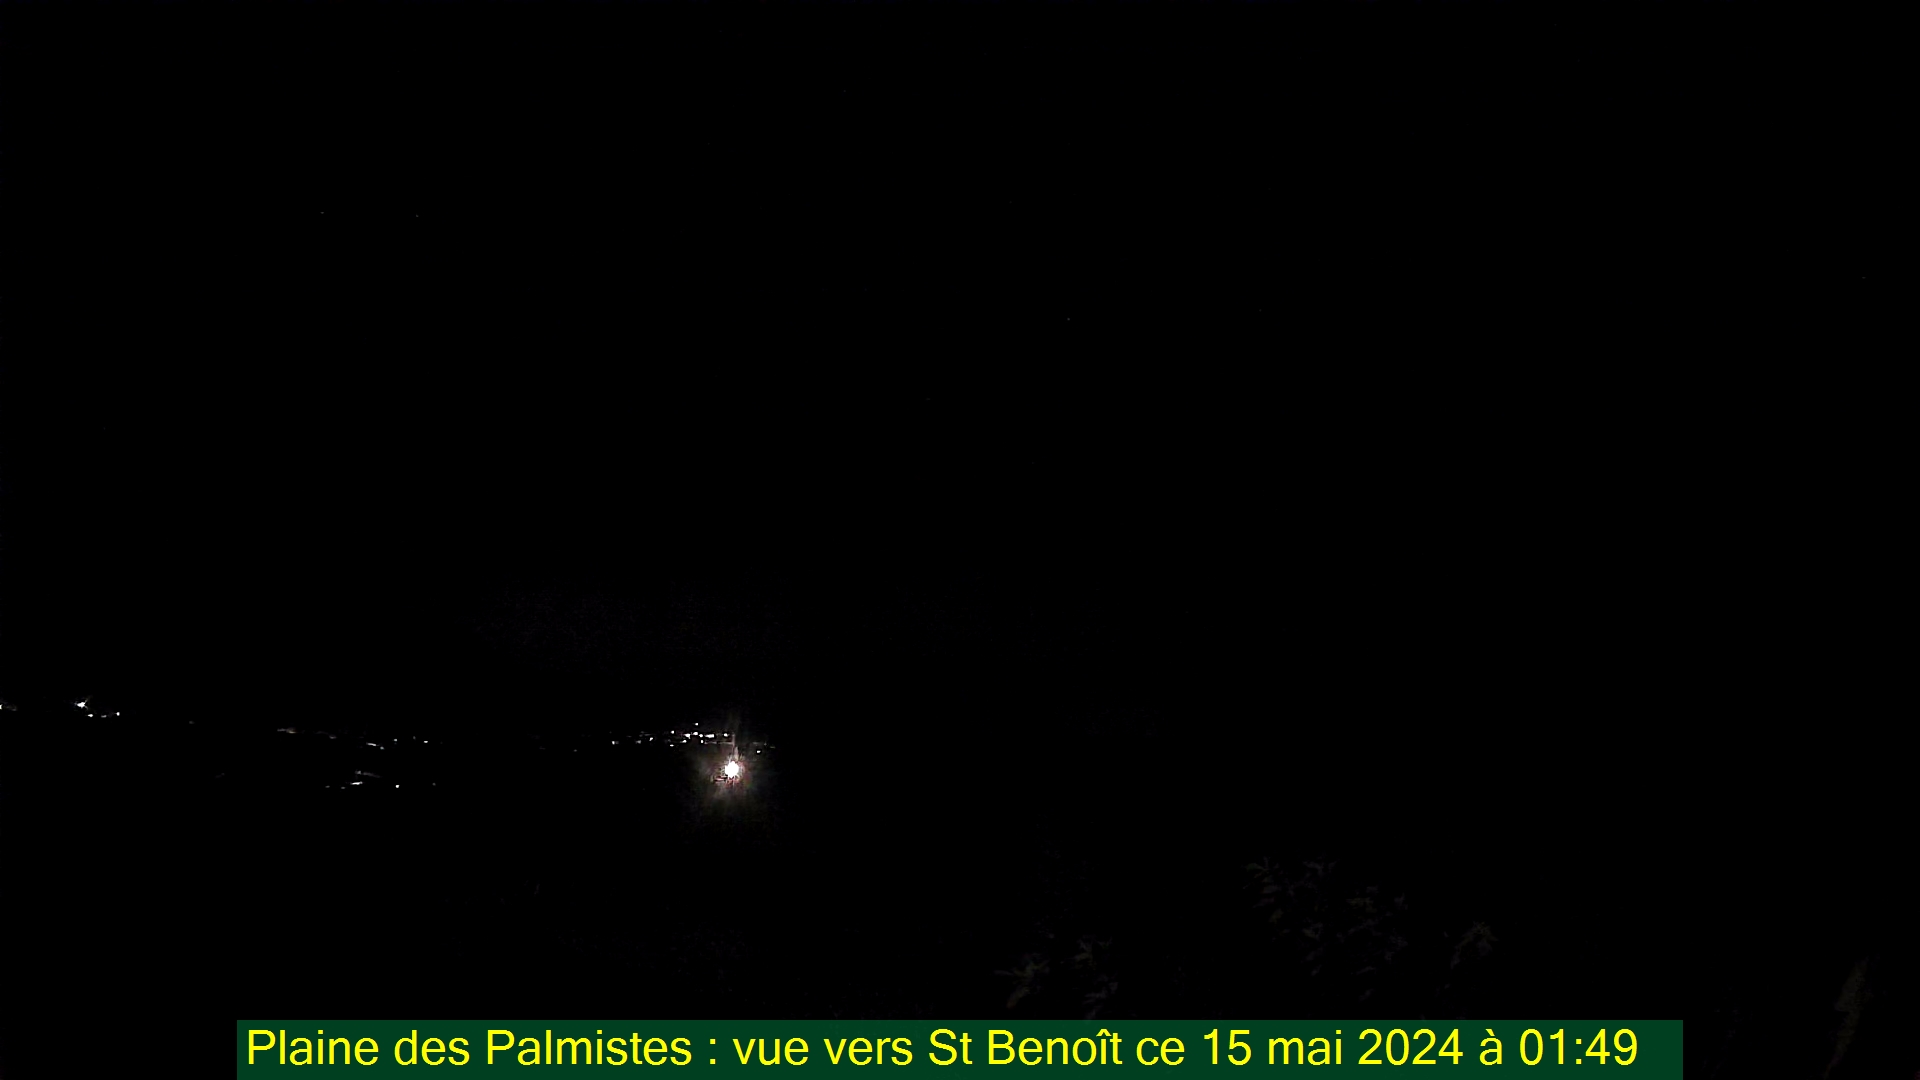 Saint-Denis (Réunion) Mon. 01:50